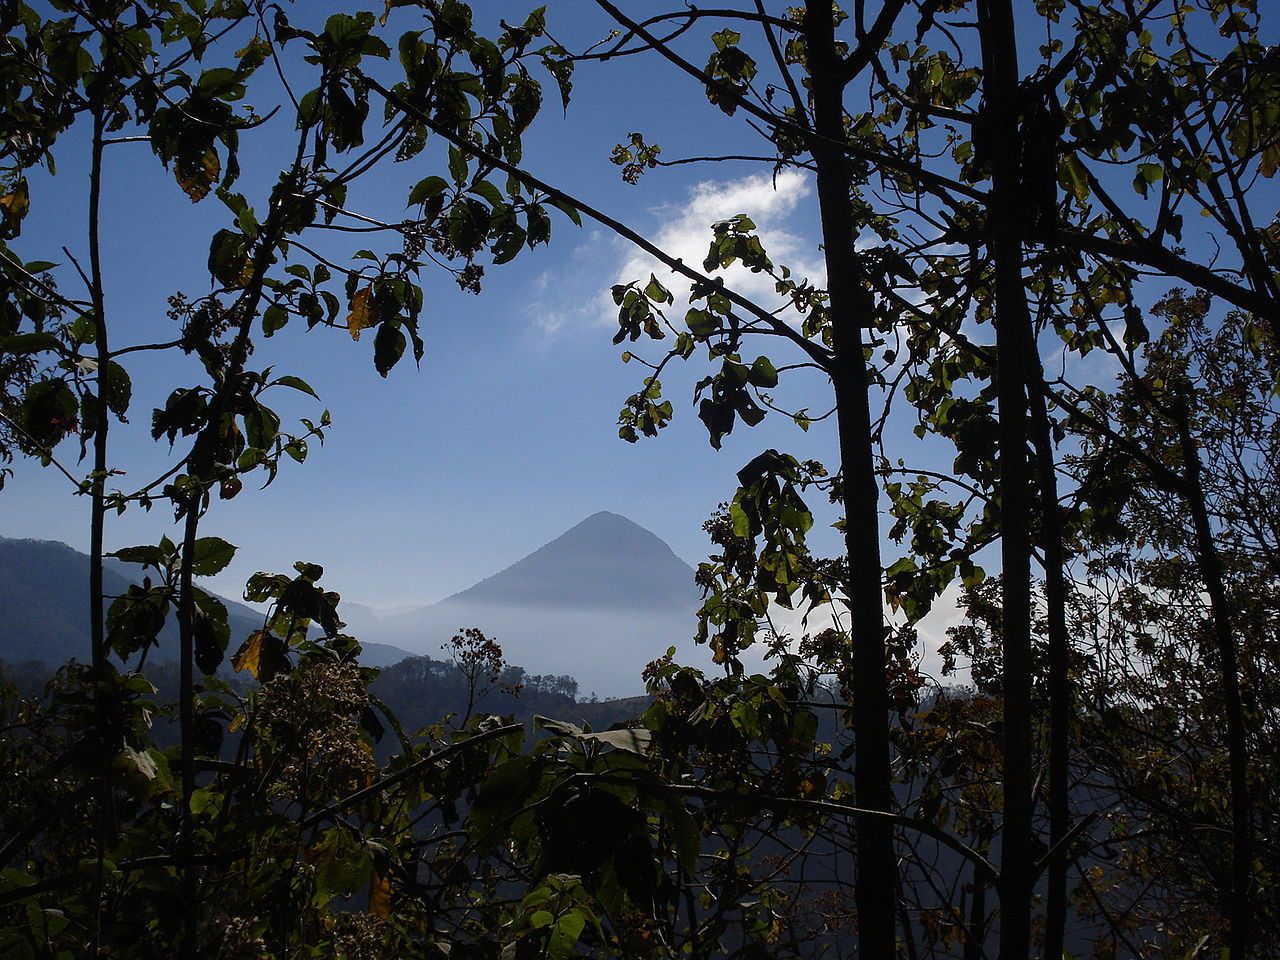  Arc volcanique d'Amérique centrale : Les volcans du Guatemala